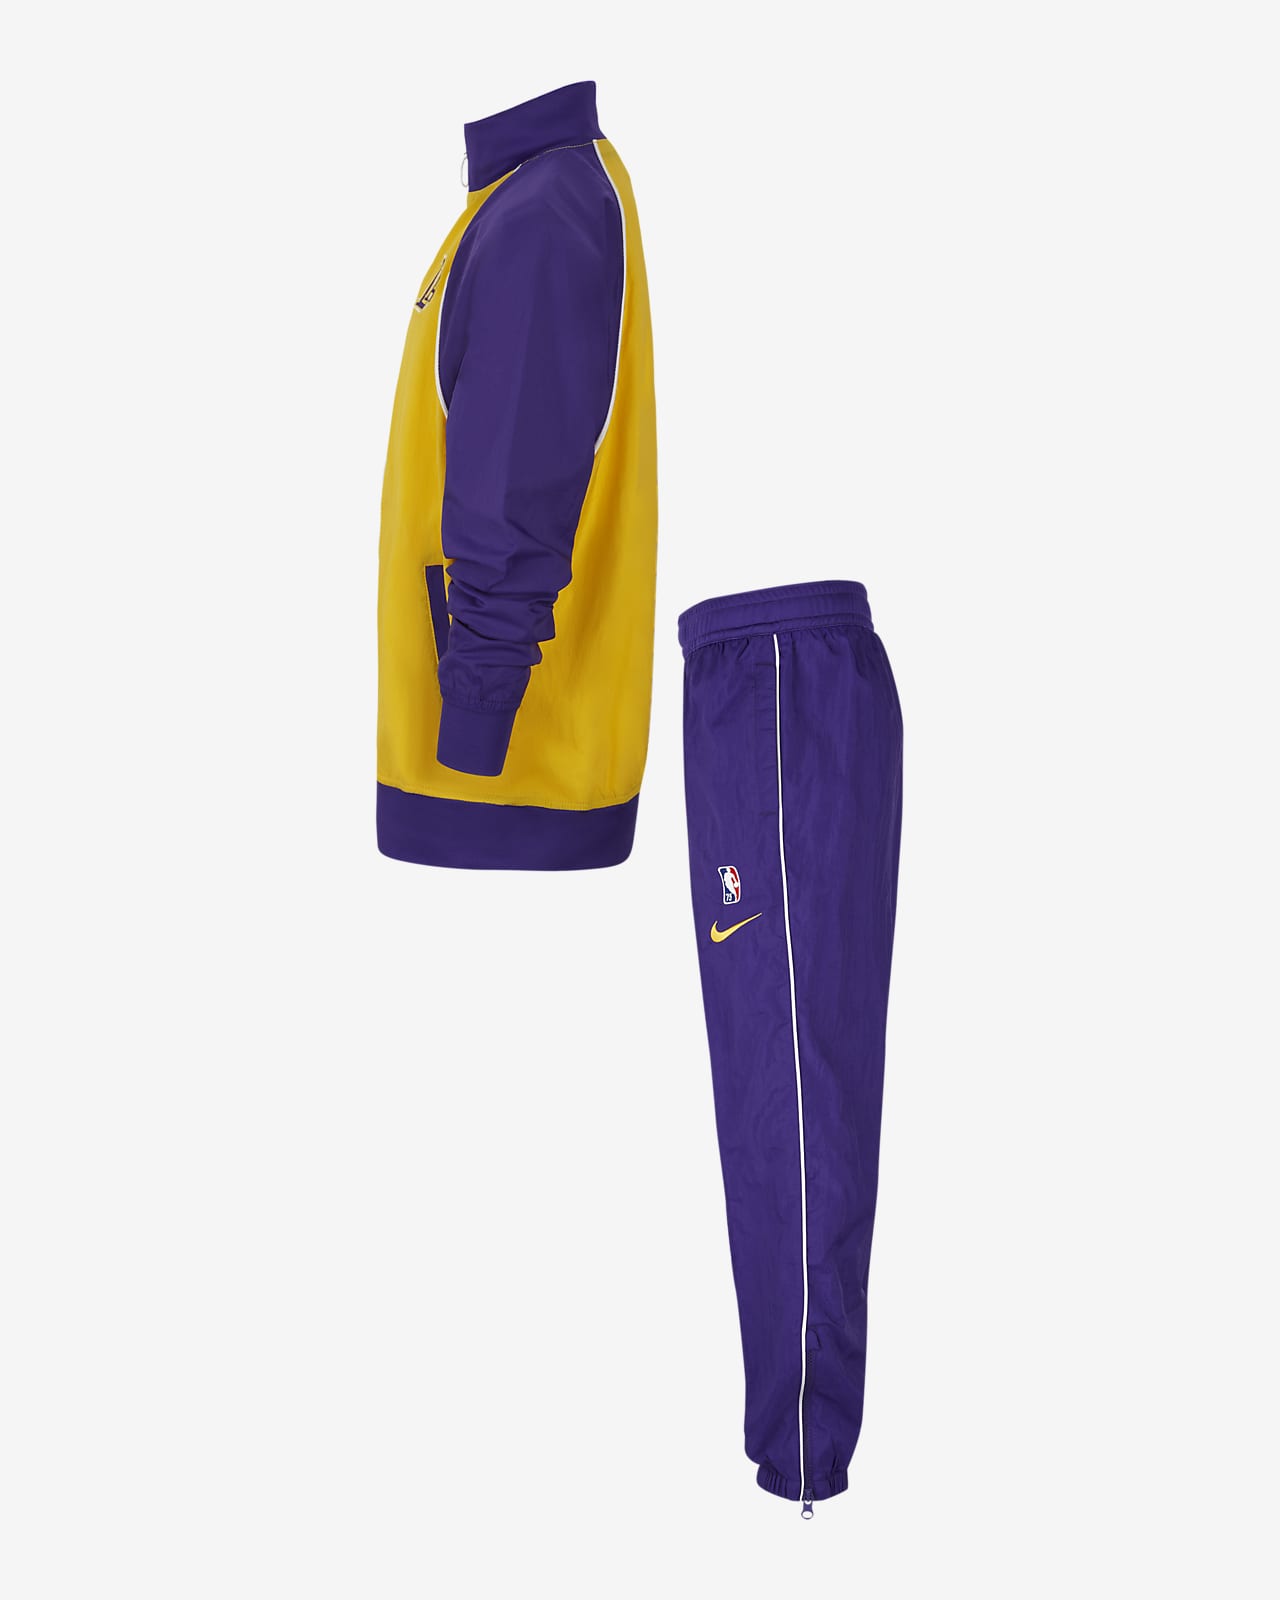 Los Lakers Courtside Chándal Nike - Niño/a. Nike ES